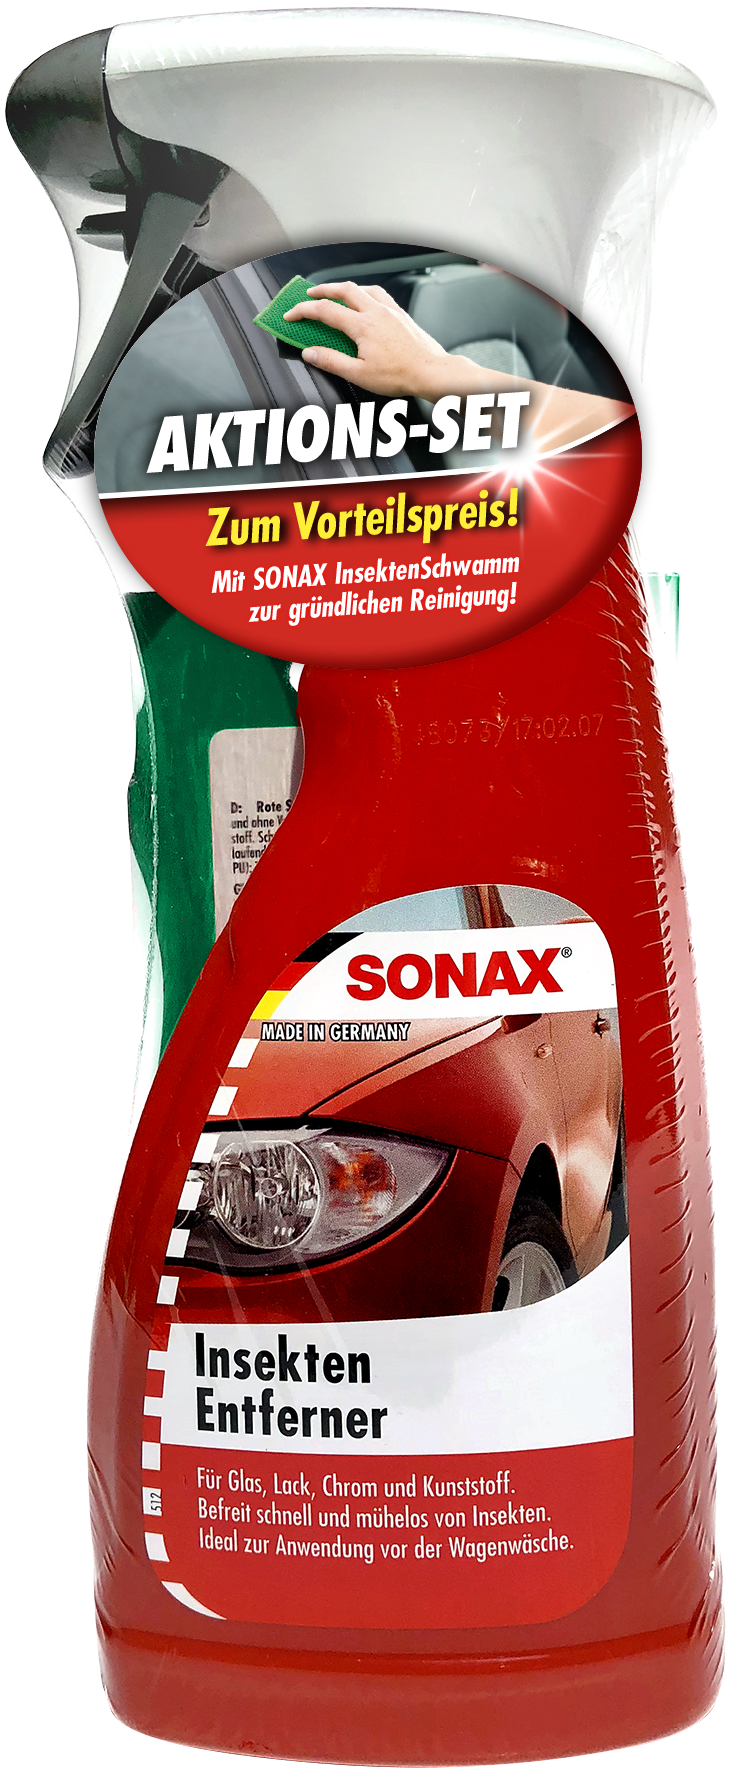 SONAX InsektenEntferner 500 ml + LackInsektenSchwamm AKTION, Außen / Lack, Reinigung & Pflege, Rund ums Fahrzeug